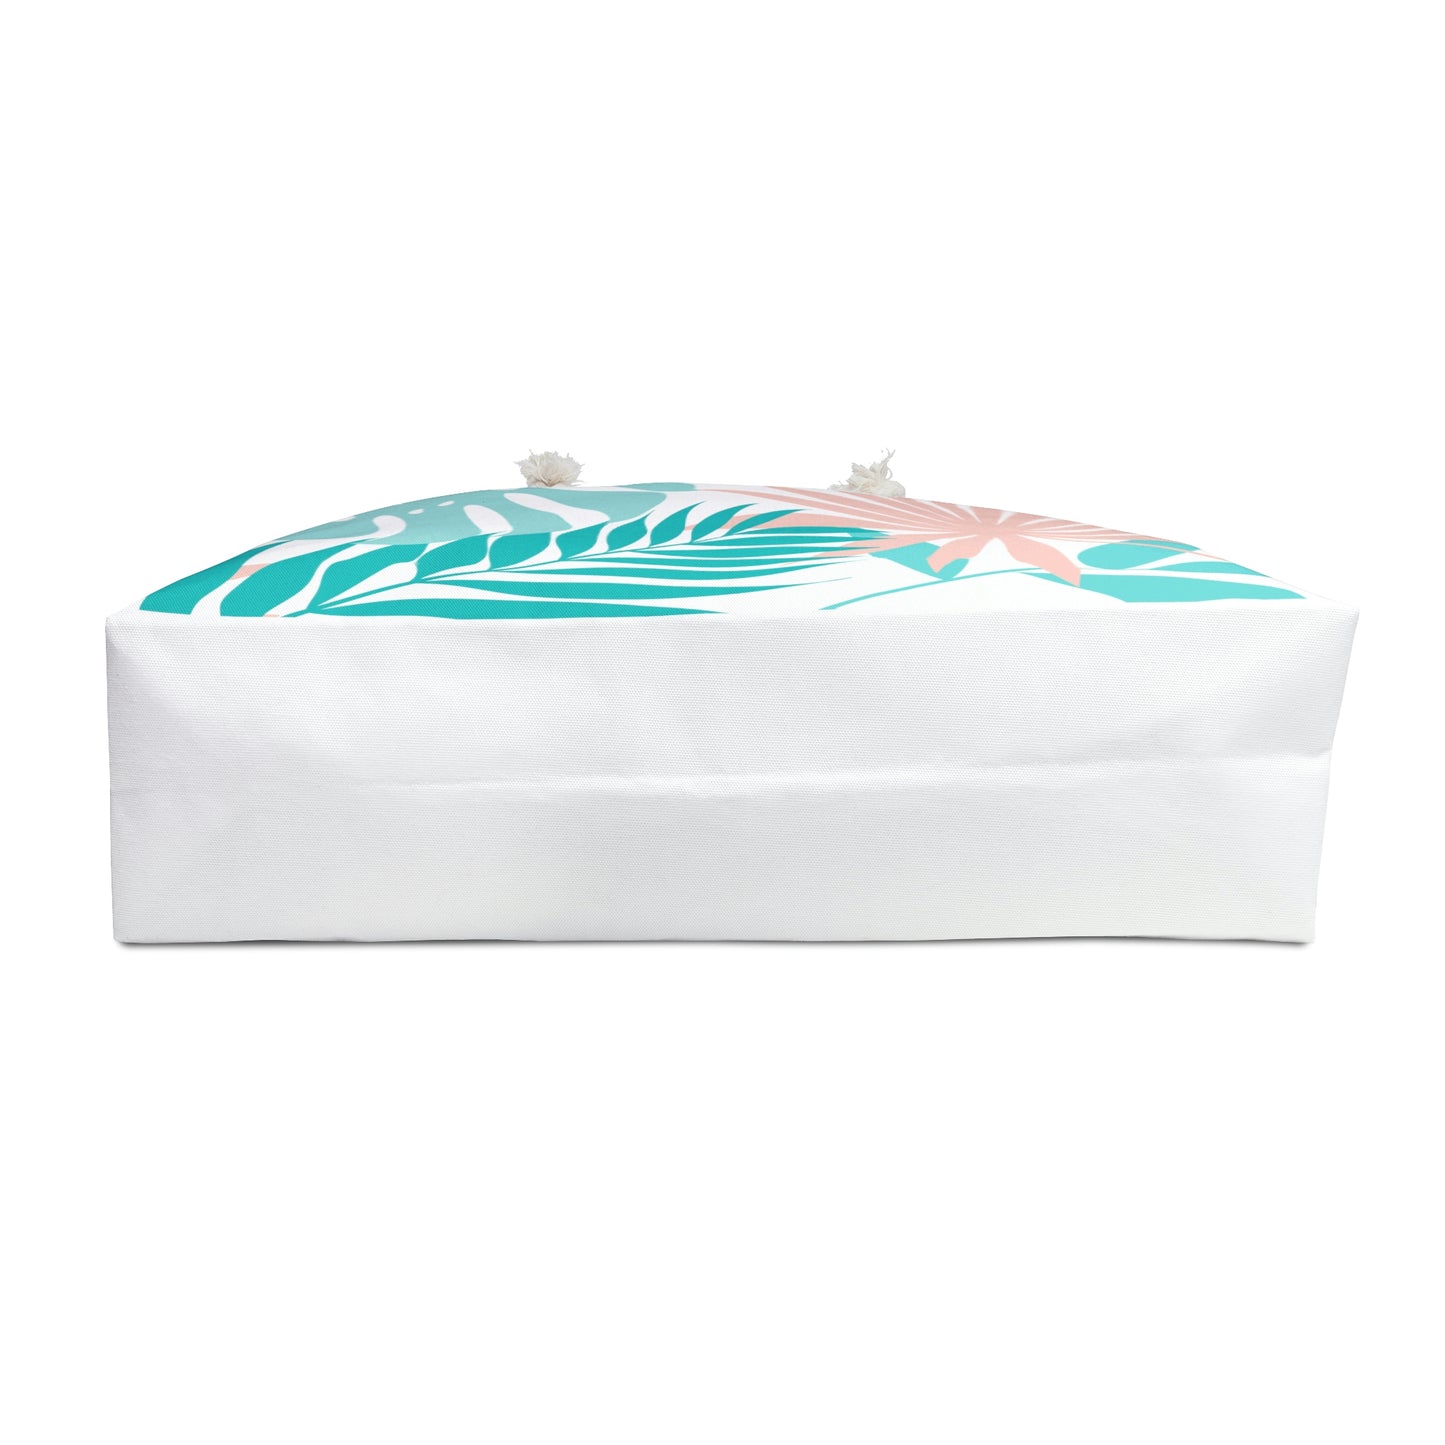 Tropical Pastel-Weekender Bag